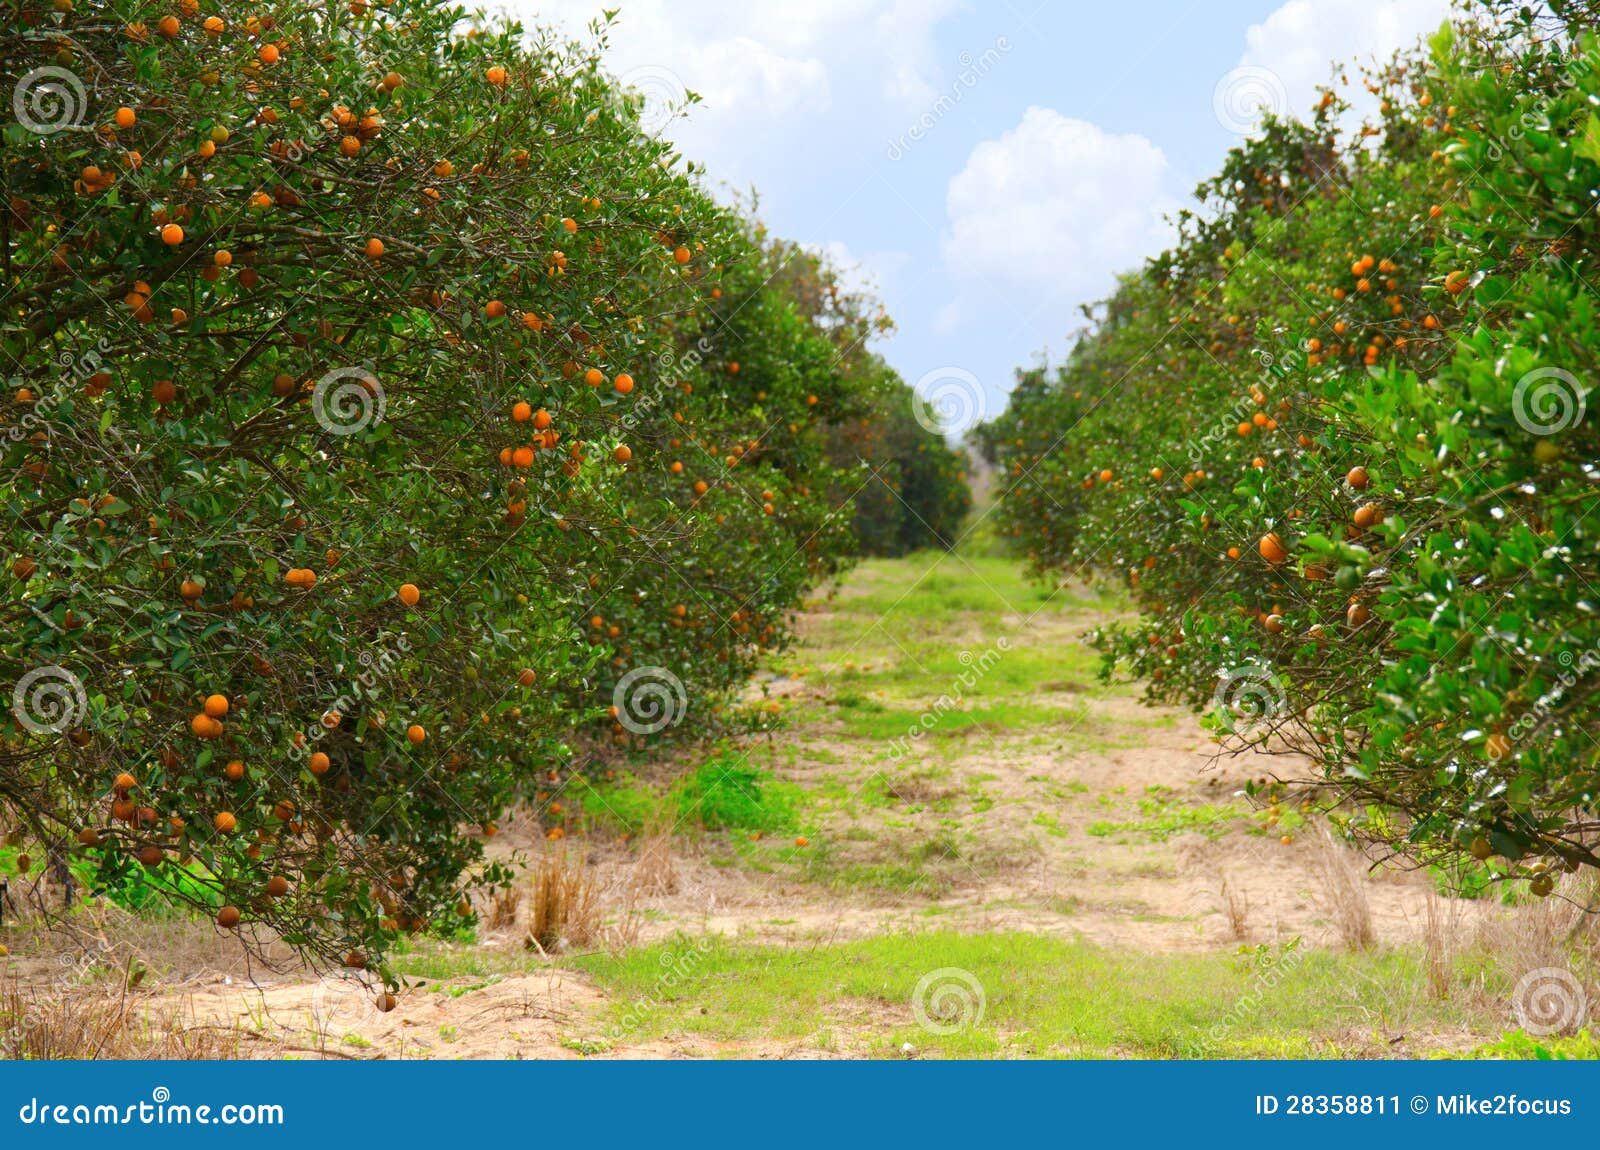 florida orange grove with ripe oranges